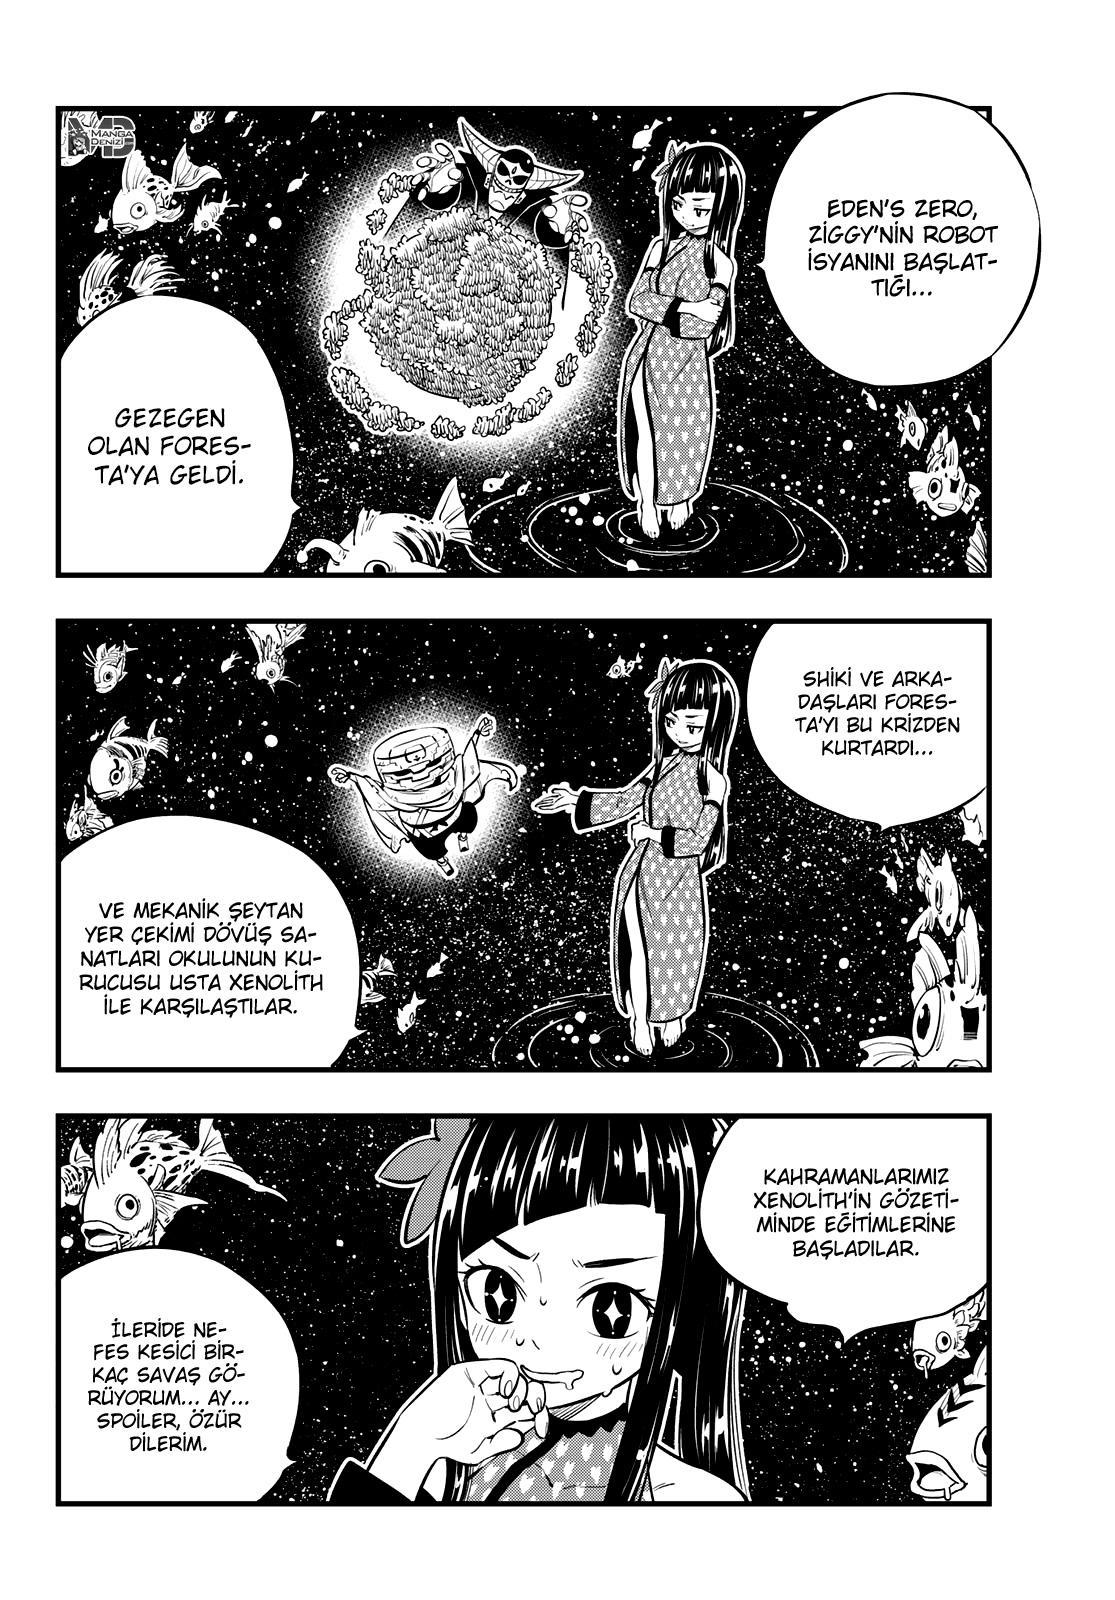 Eden's Zero mangasının 133 bölümünün 3. sayfasını okuyorsunuz.